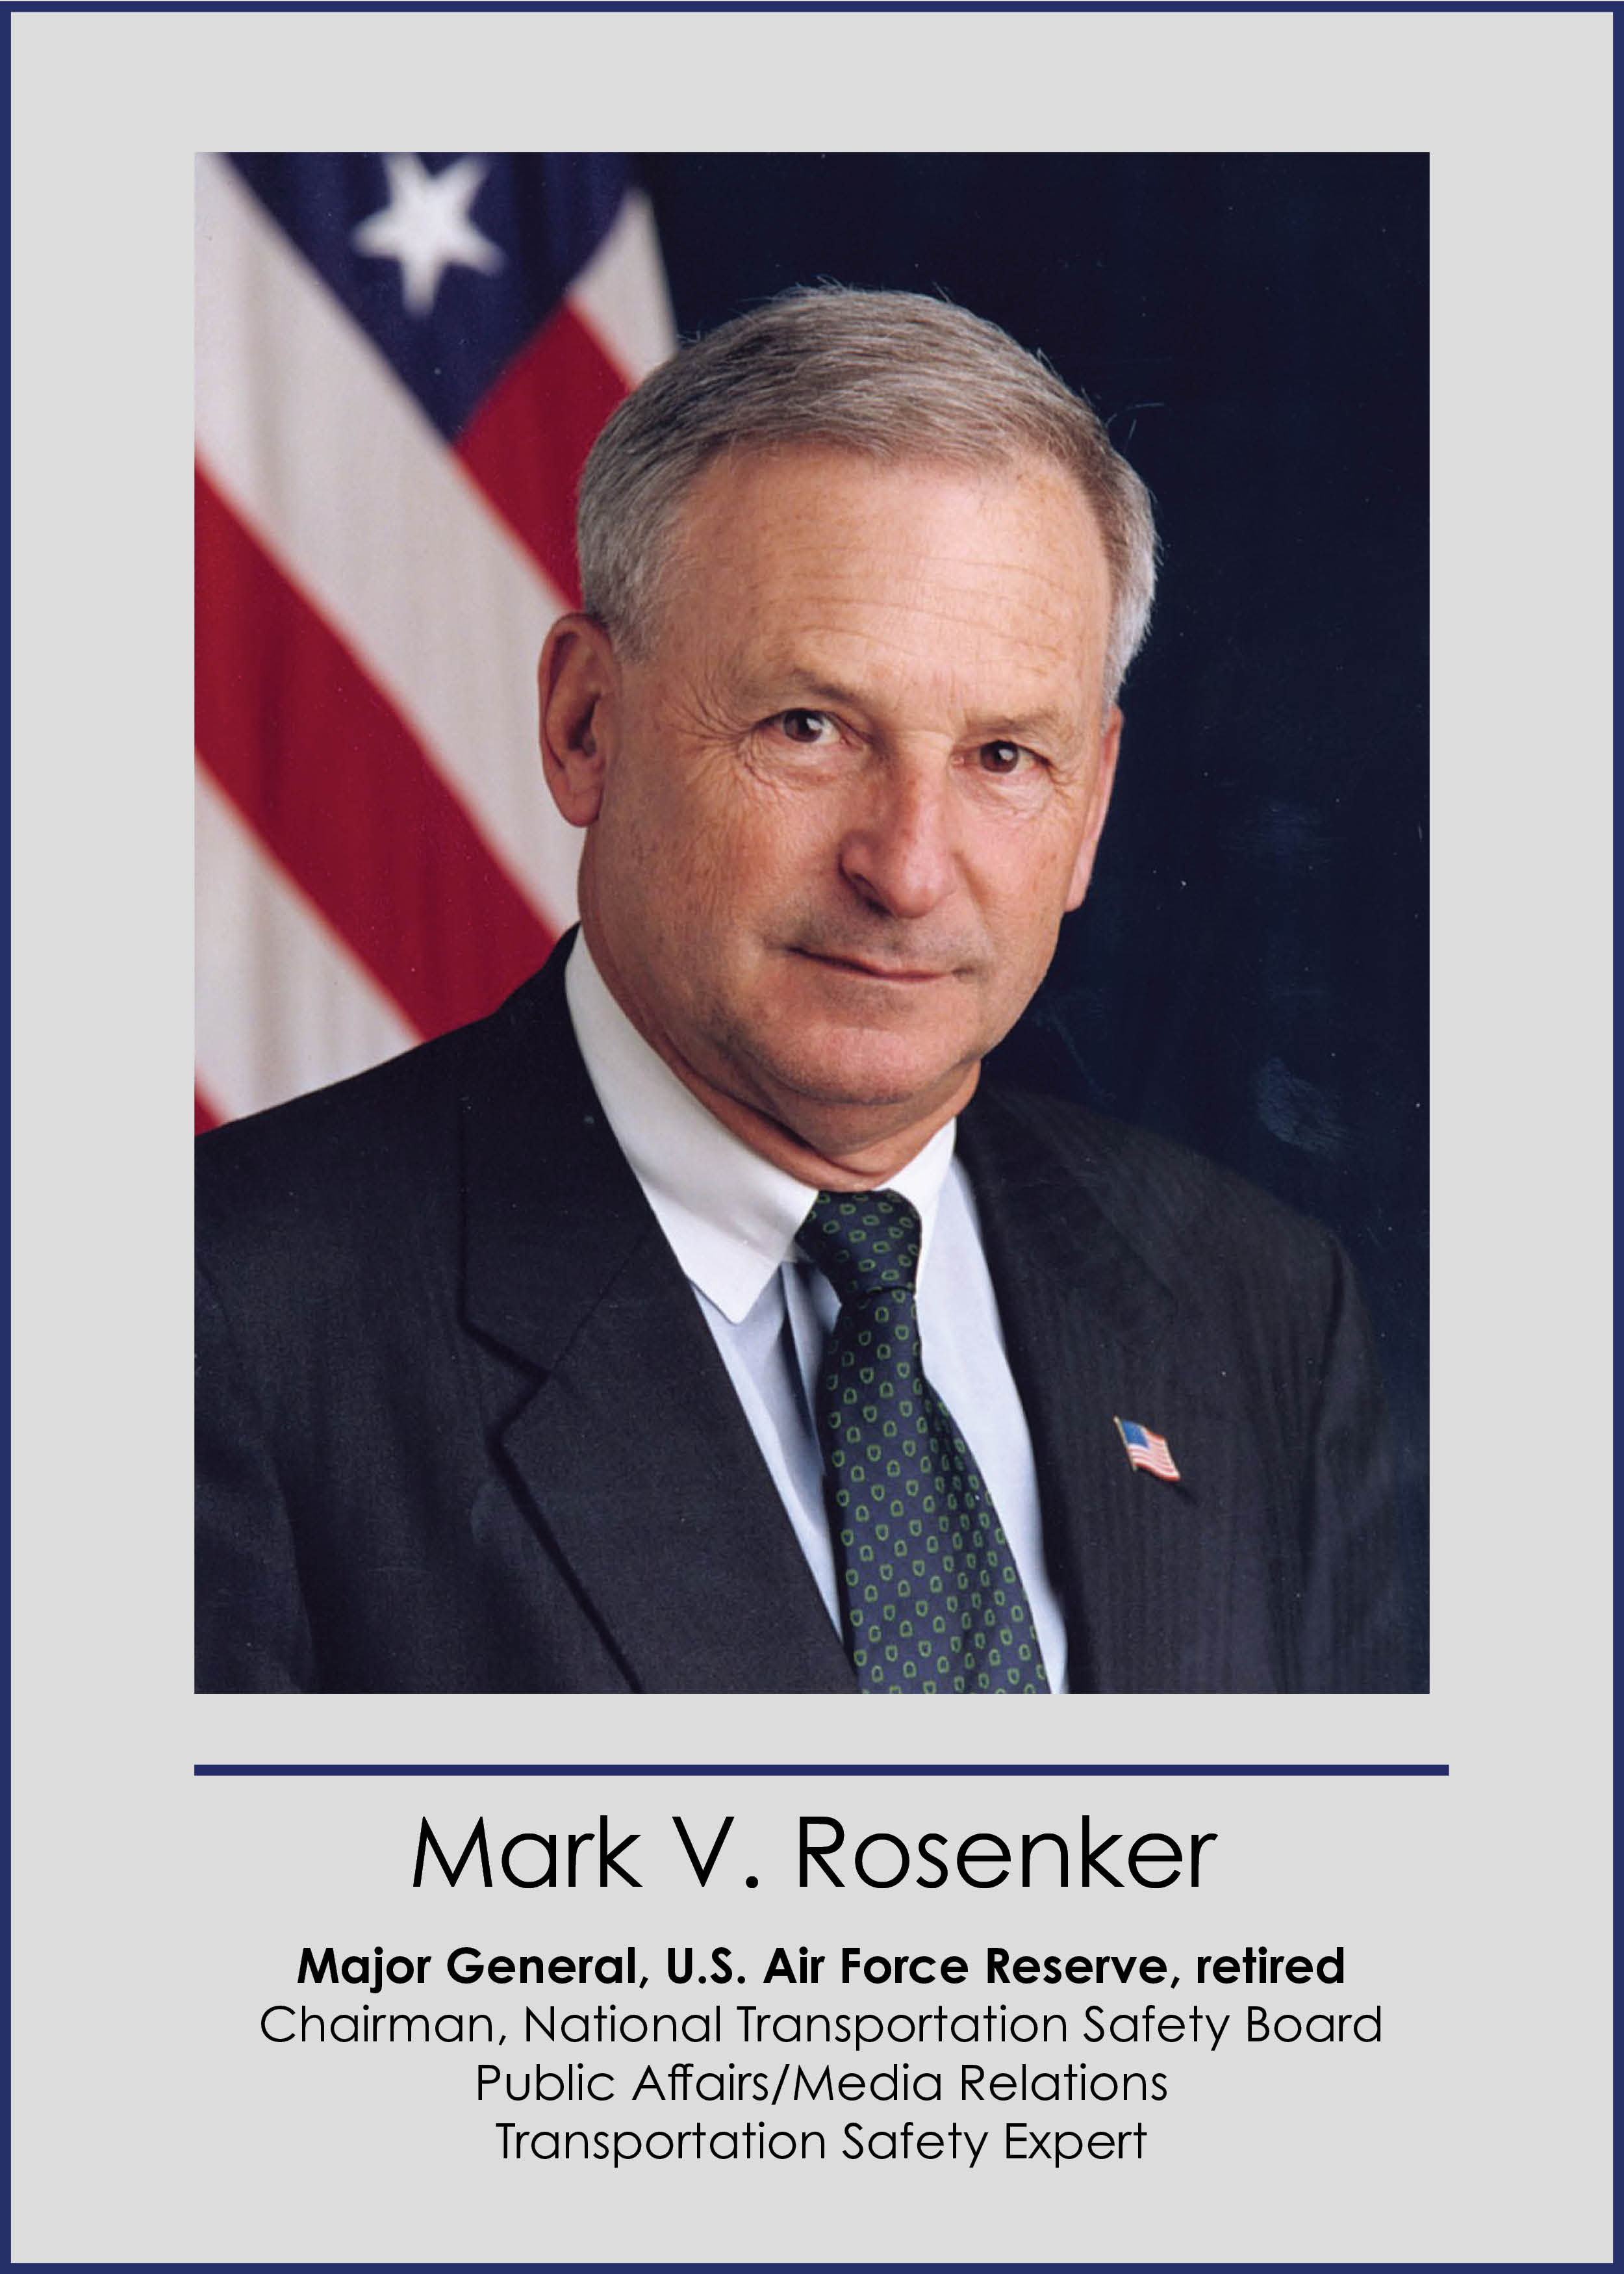 Link: Mark V. Rosenker